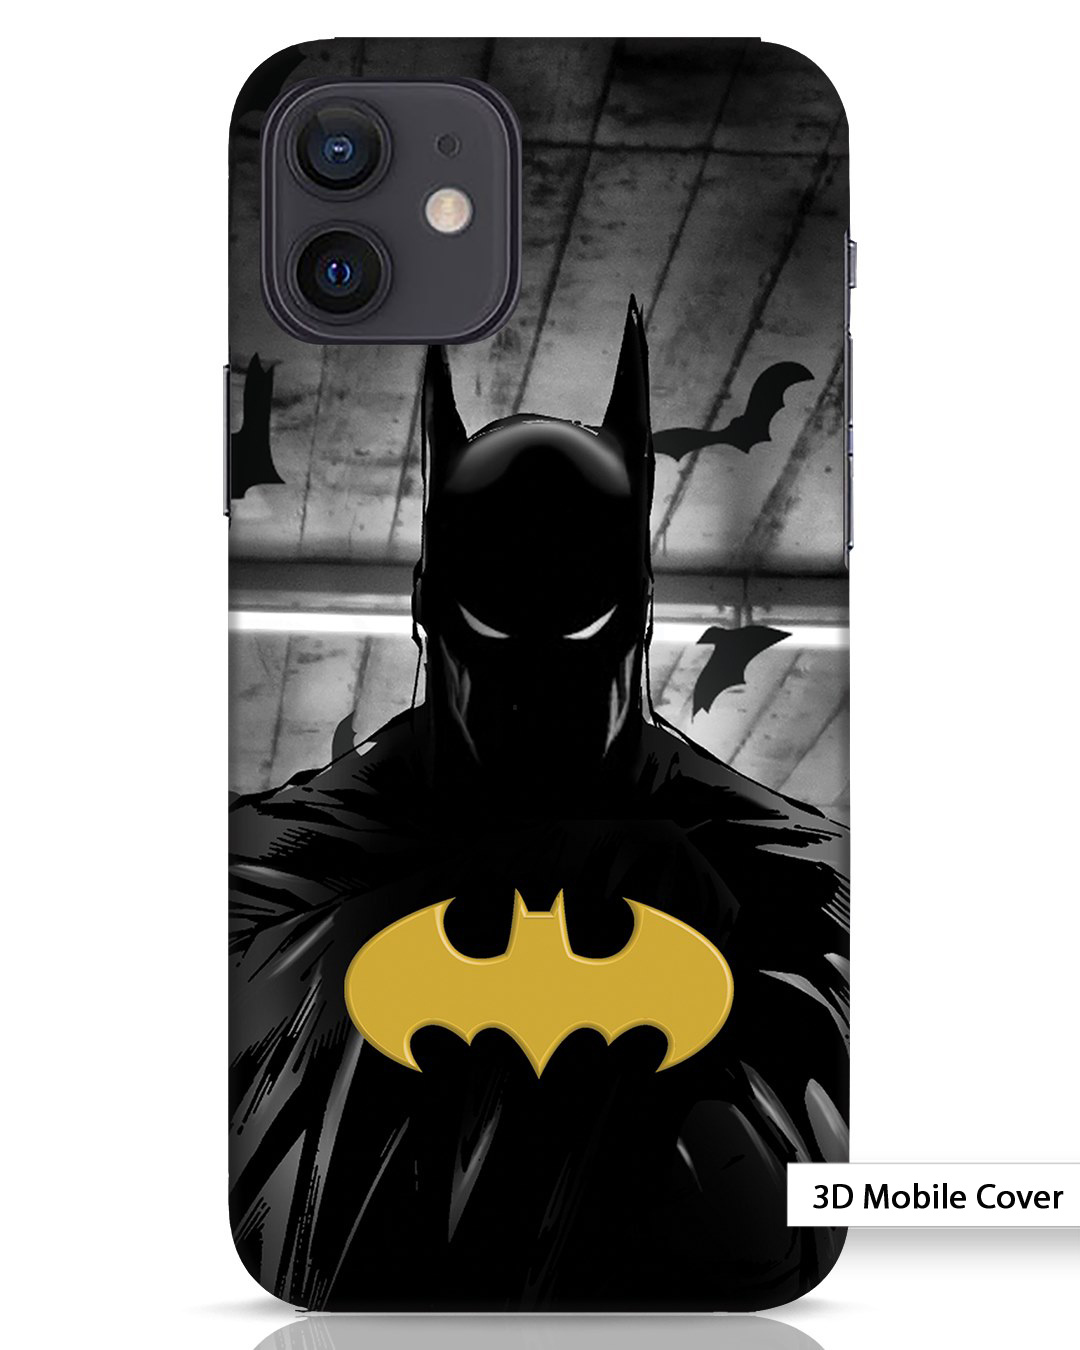 Buy Batman Logo iPhone 12 3D Mobile Cover Online in India at Bewakoof